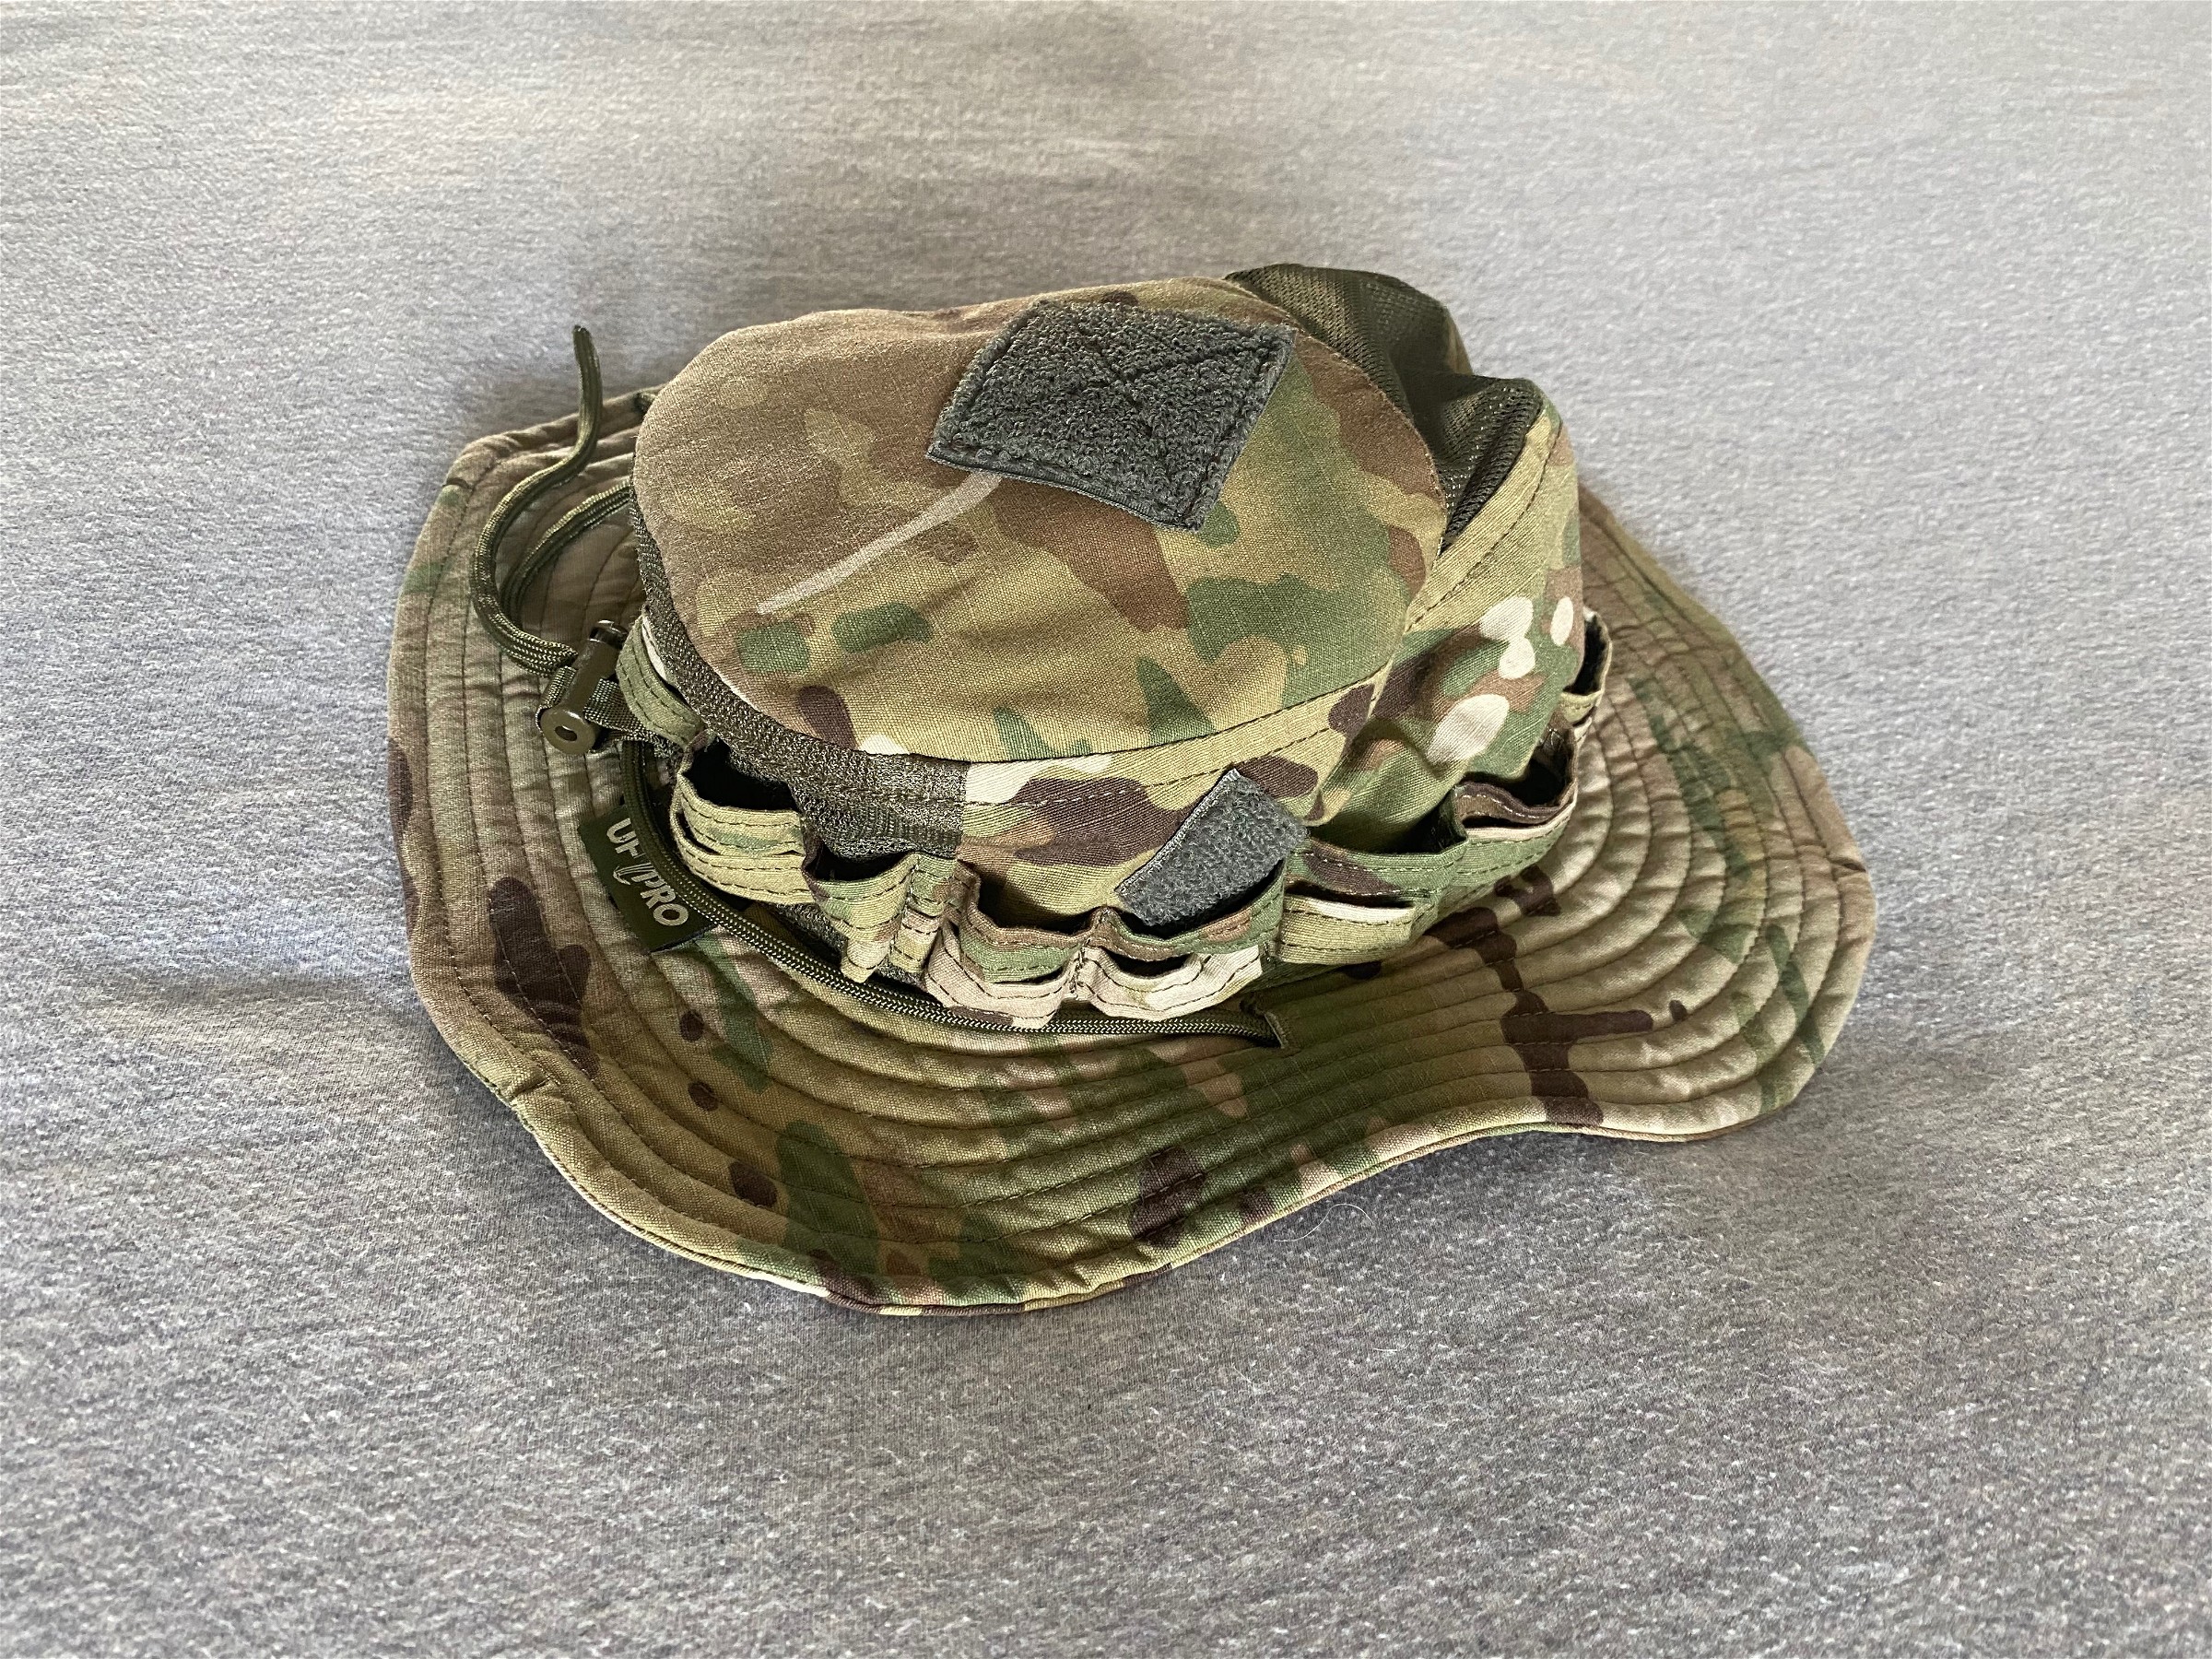 UF Pro - Striker Boonie Hat Gen. 2 Brown Medium